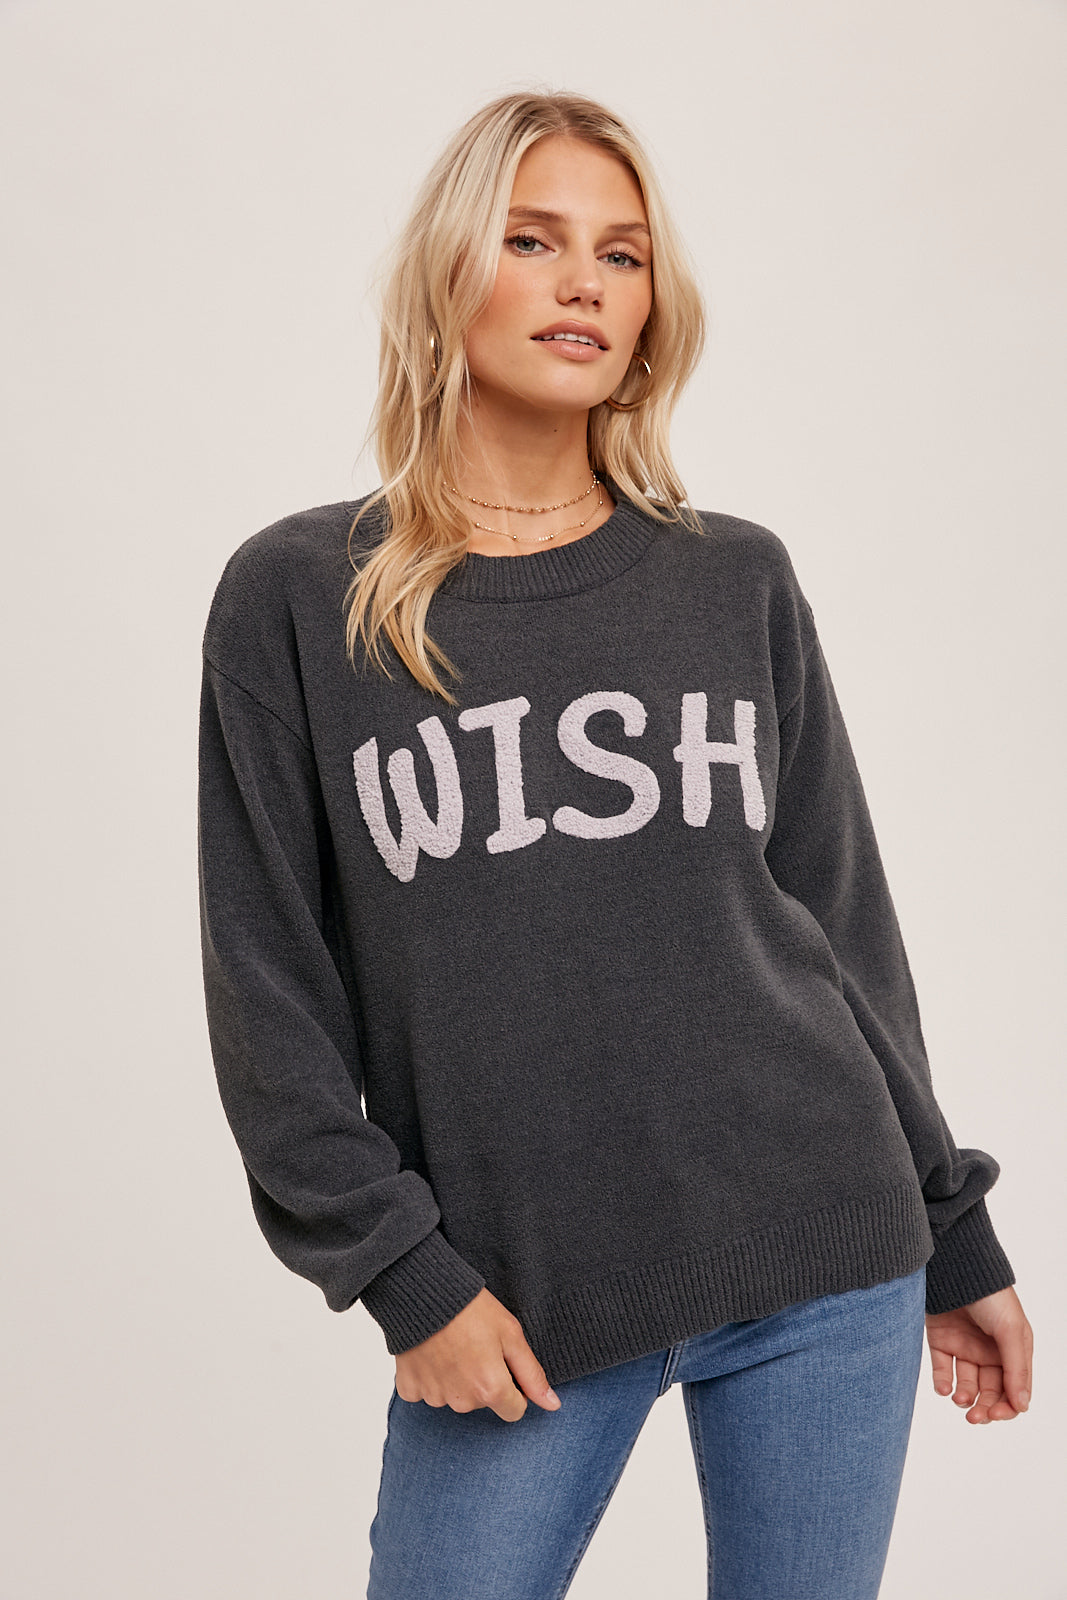 Fuzzy Wish Sweater